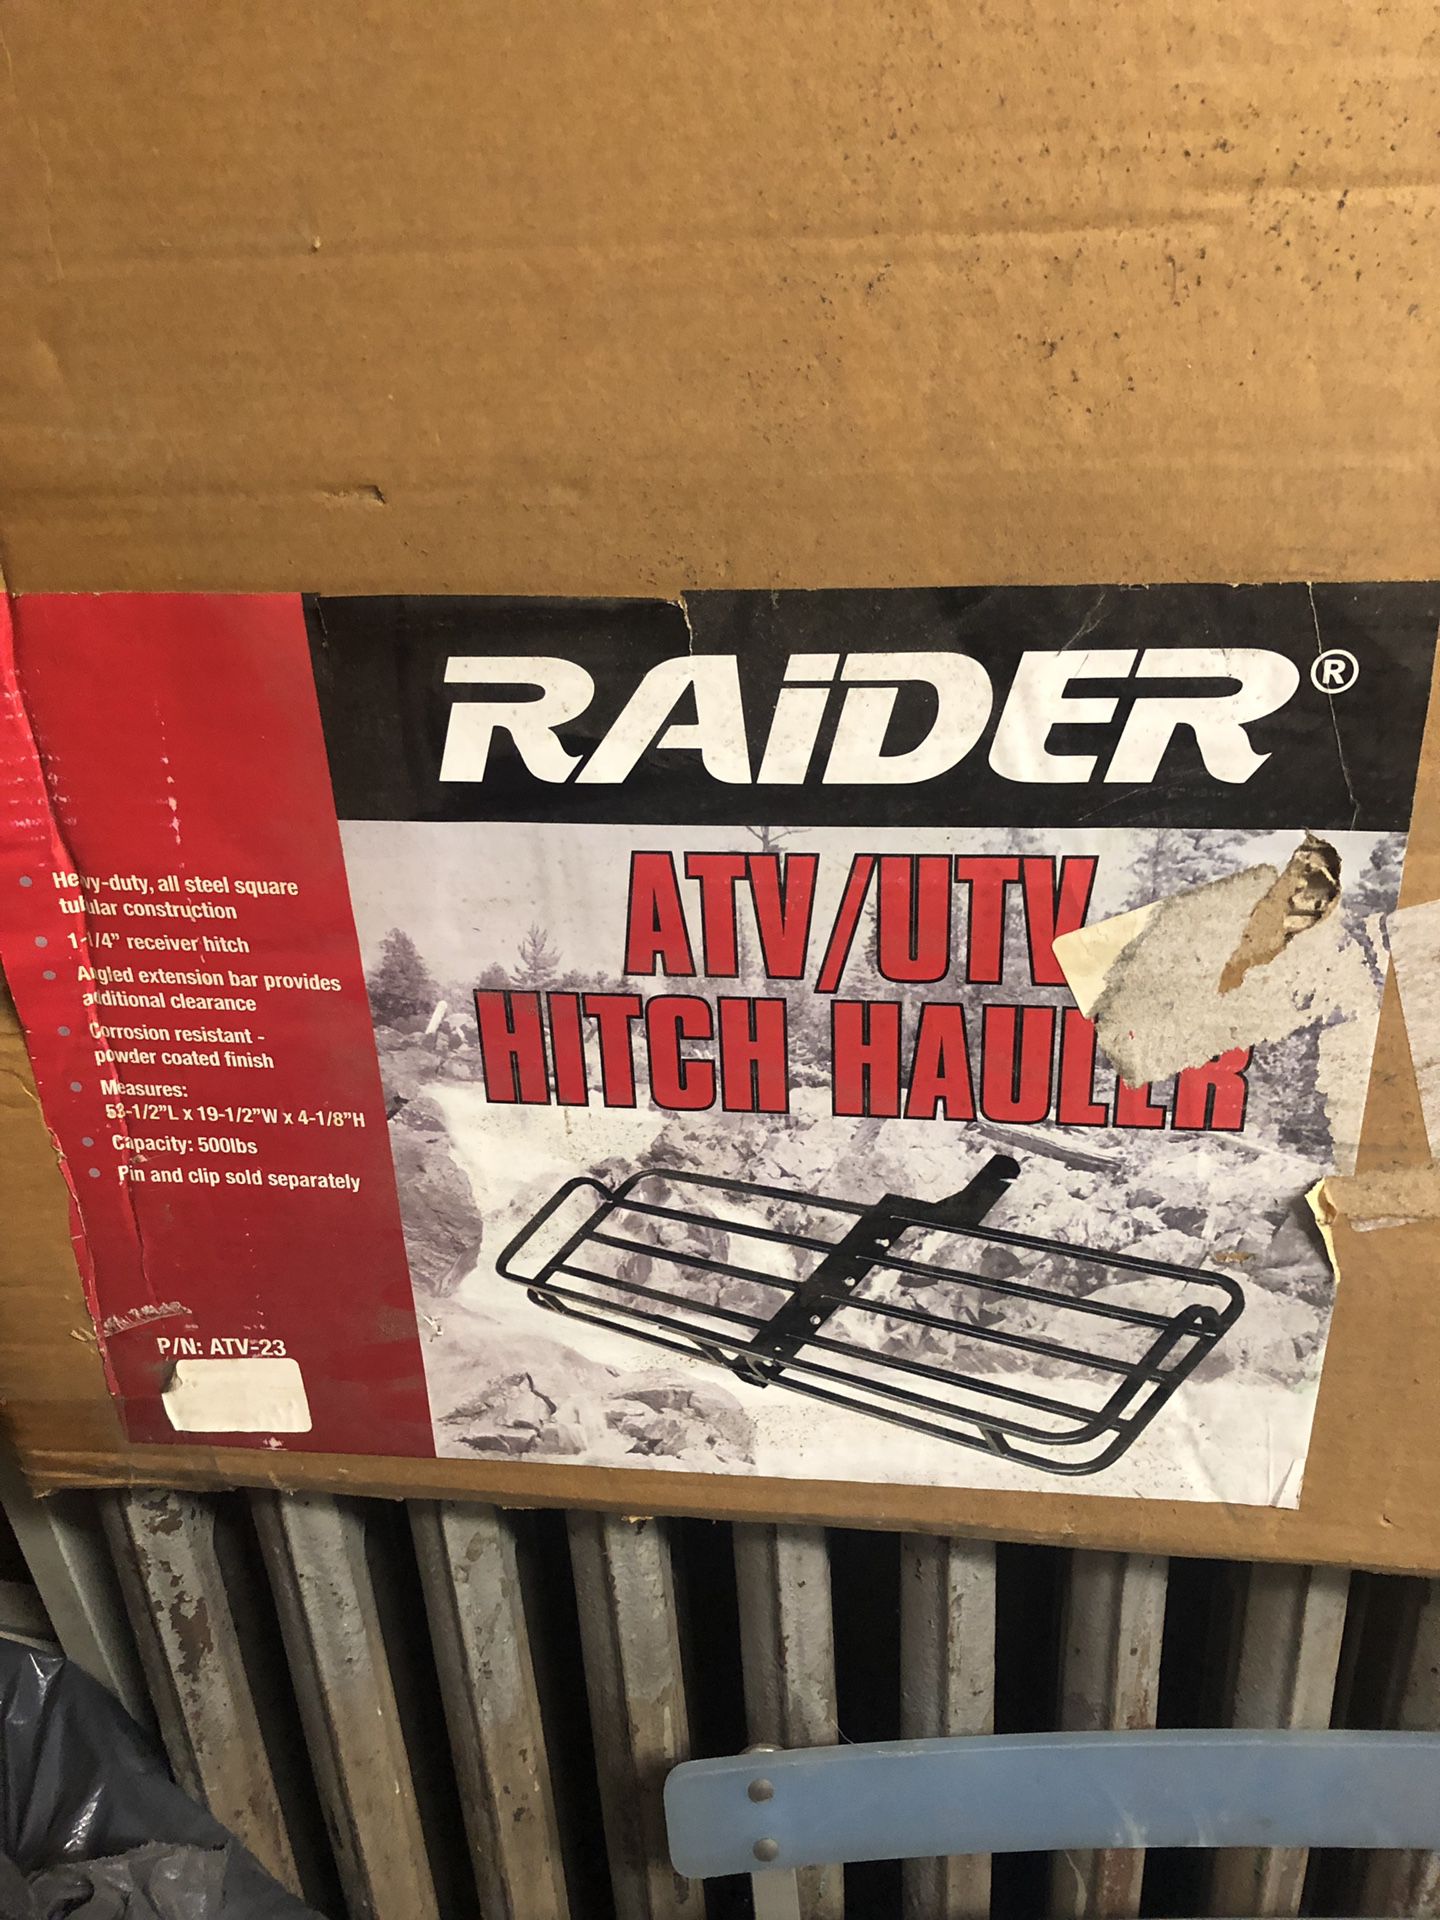 Raider Hitch Hauler. ATV /UTV